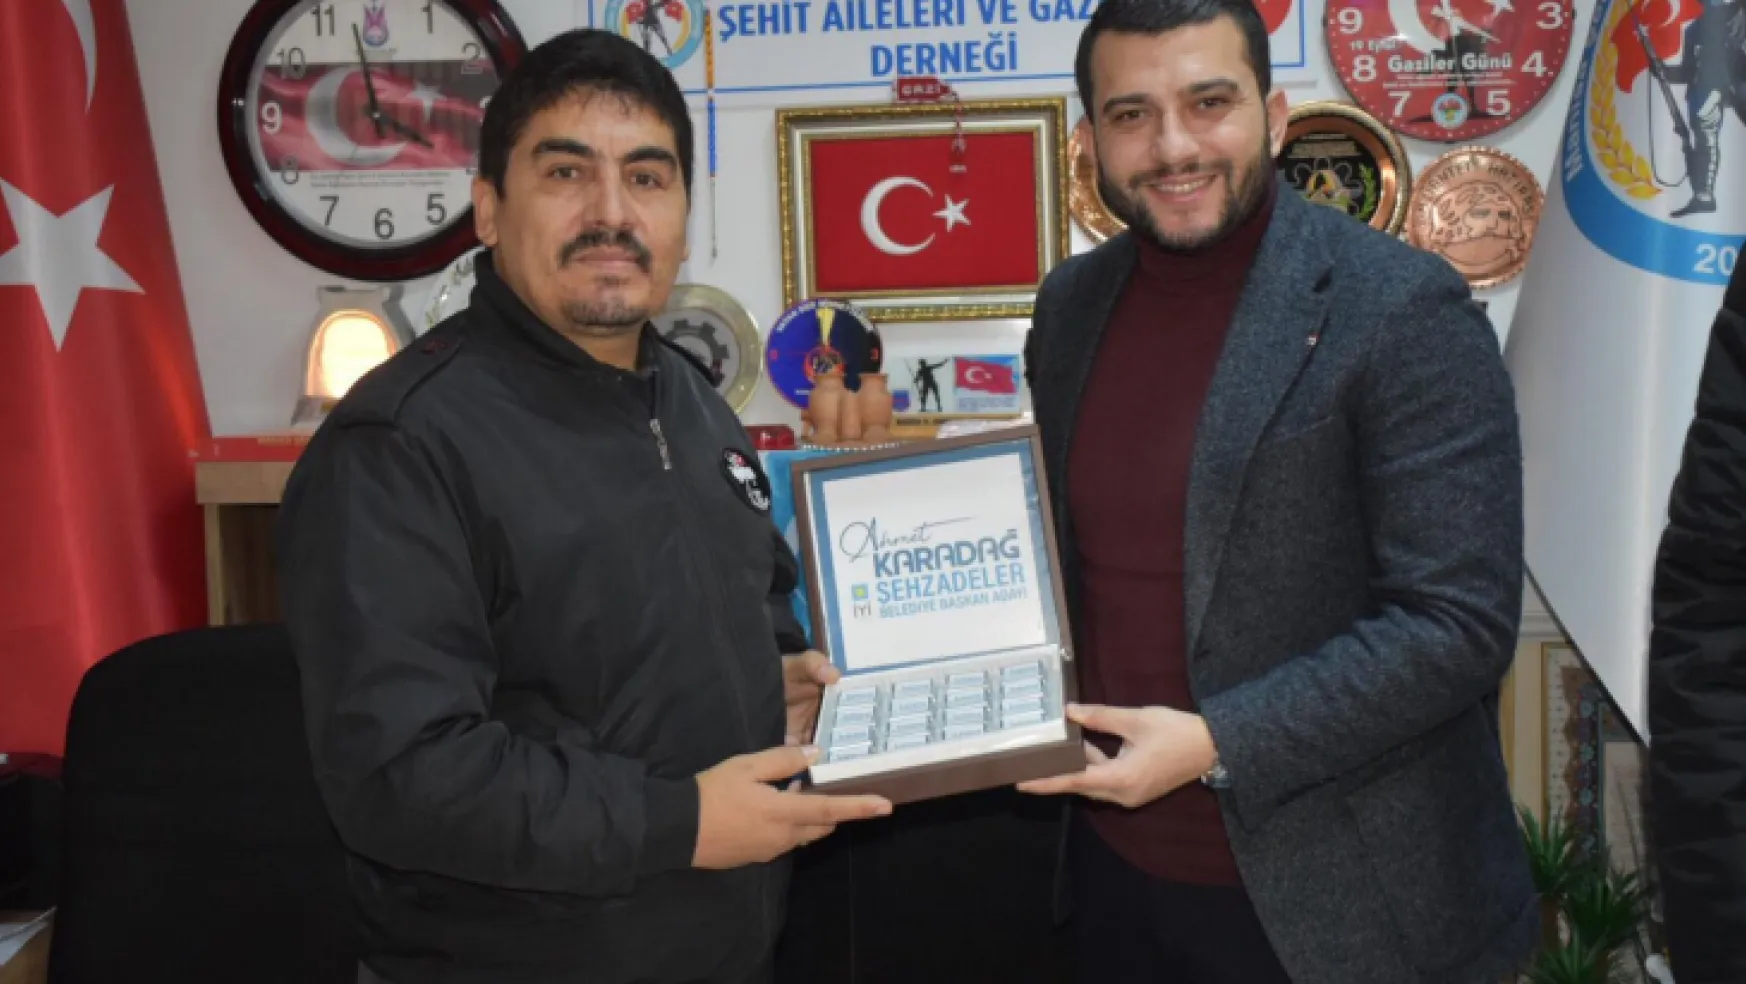 Ahmet Karadağ Manisa Şehit Aileleri Ve Gaziler Derneğini Ziyaret Etti